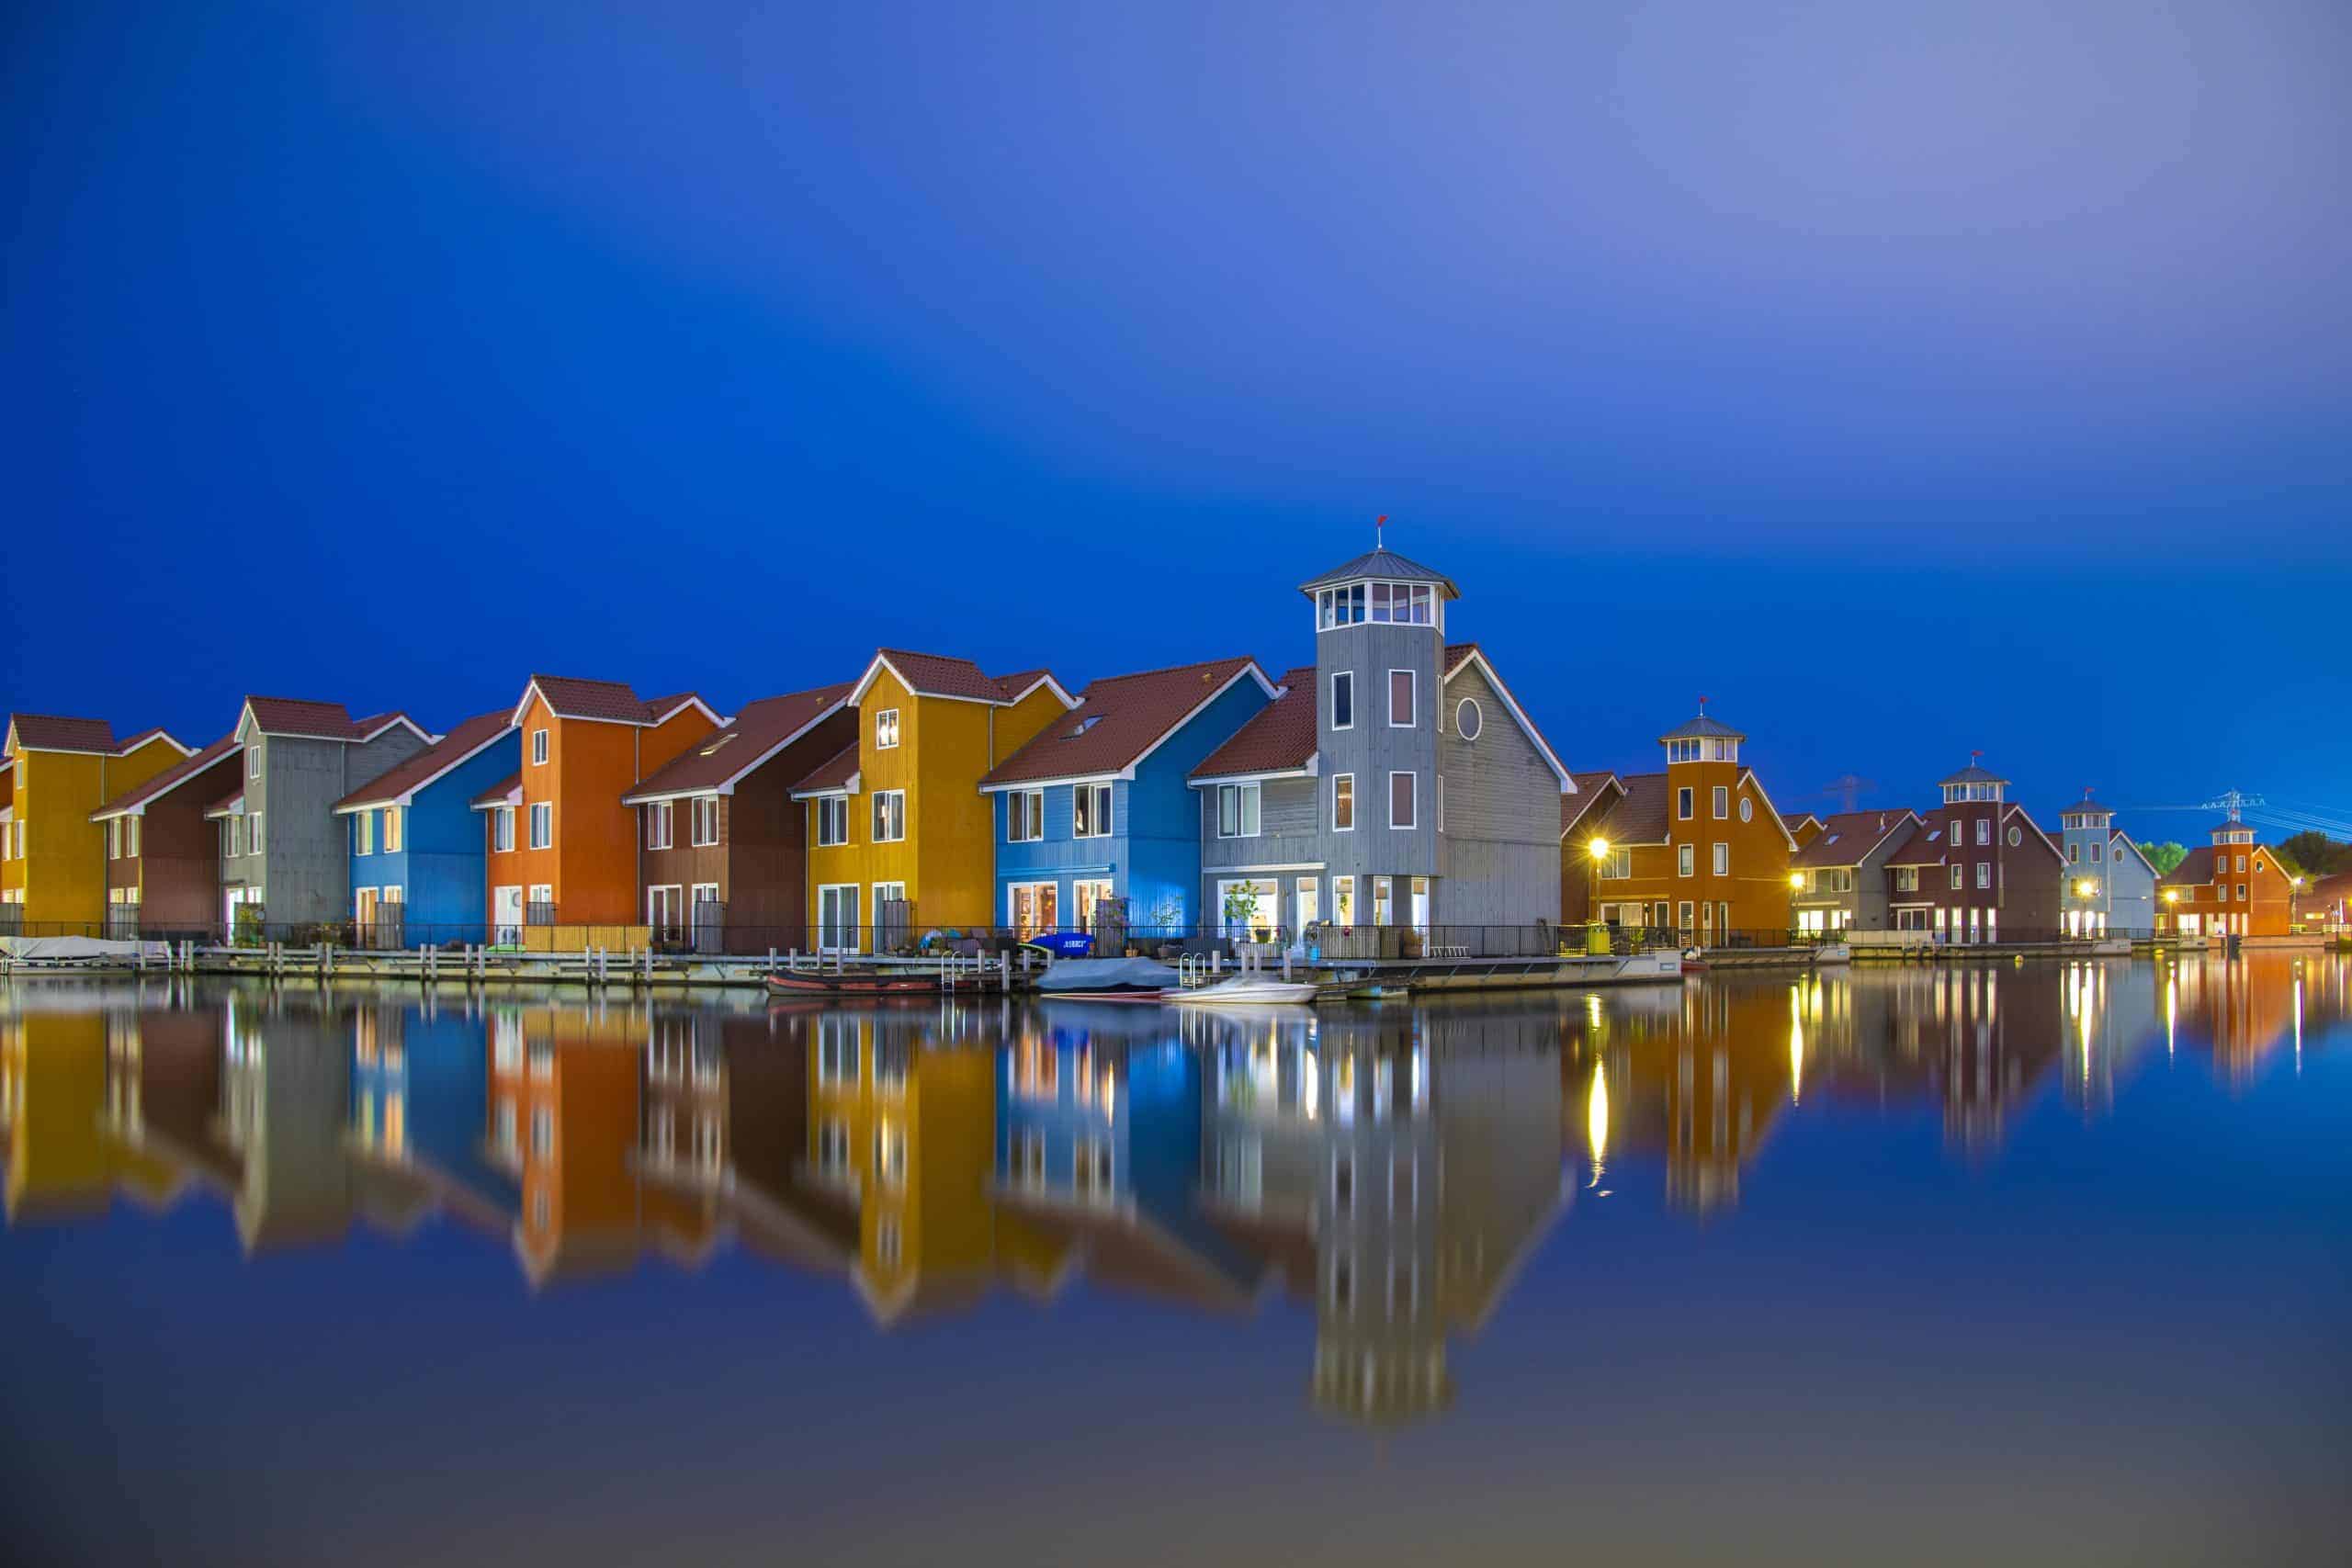 Fotografiecursus Reitdiephaven Groningen in het blauwe kwartiertje.